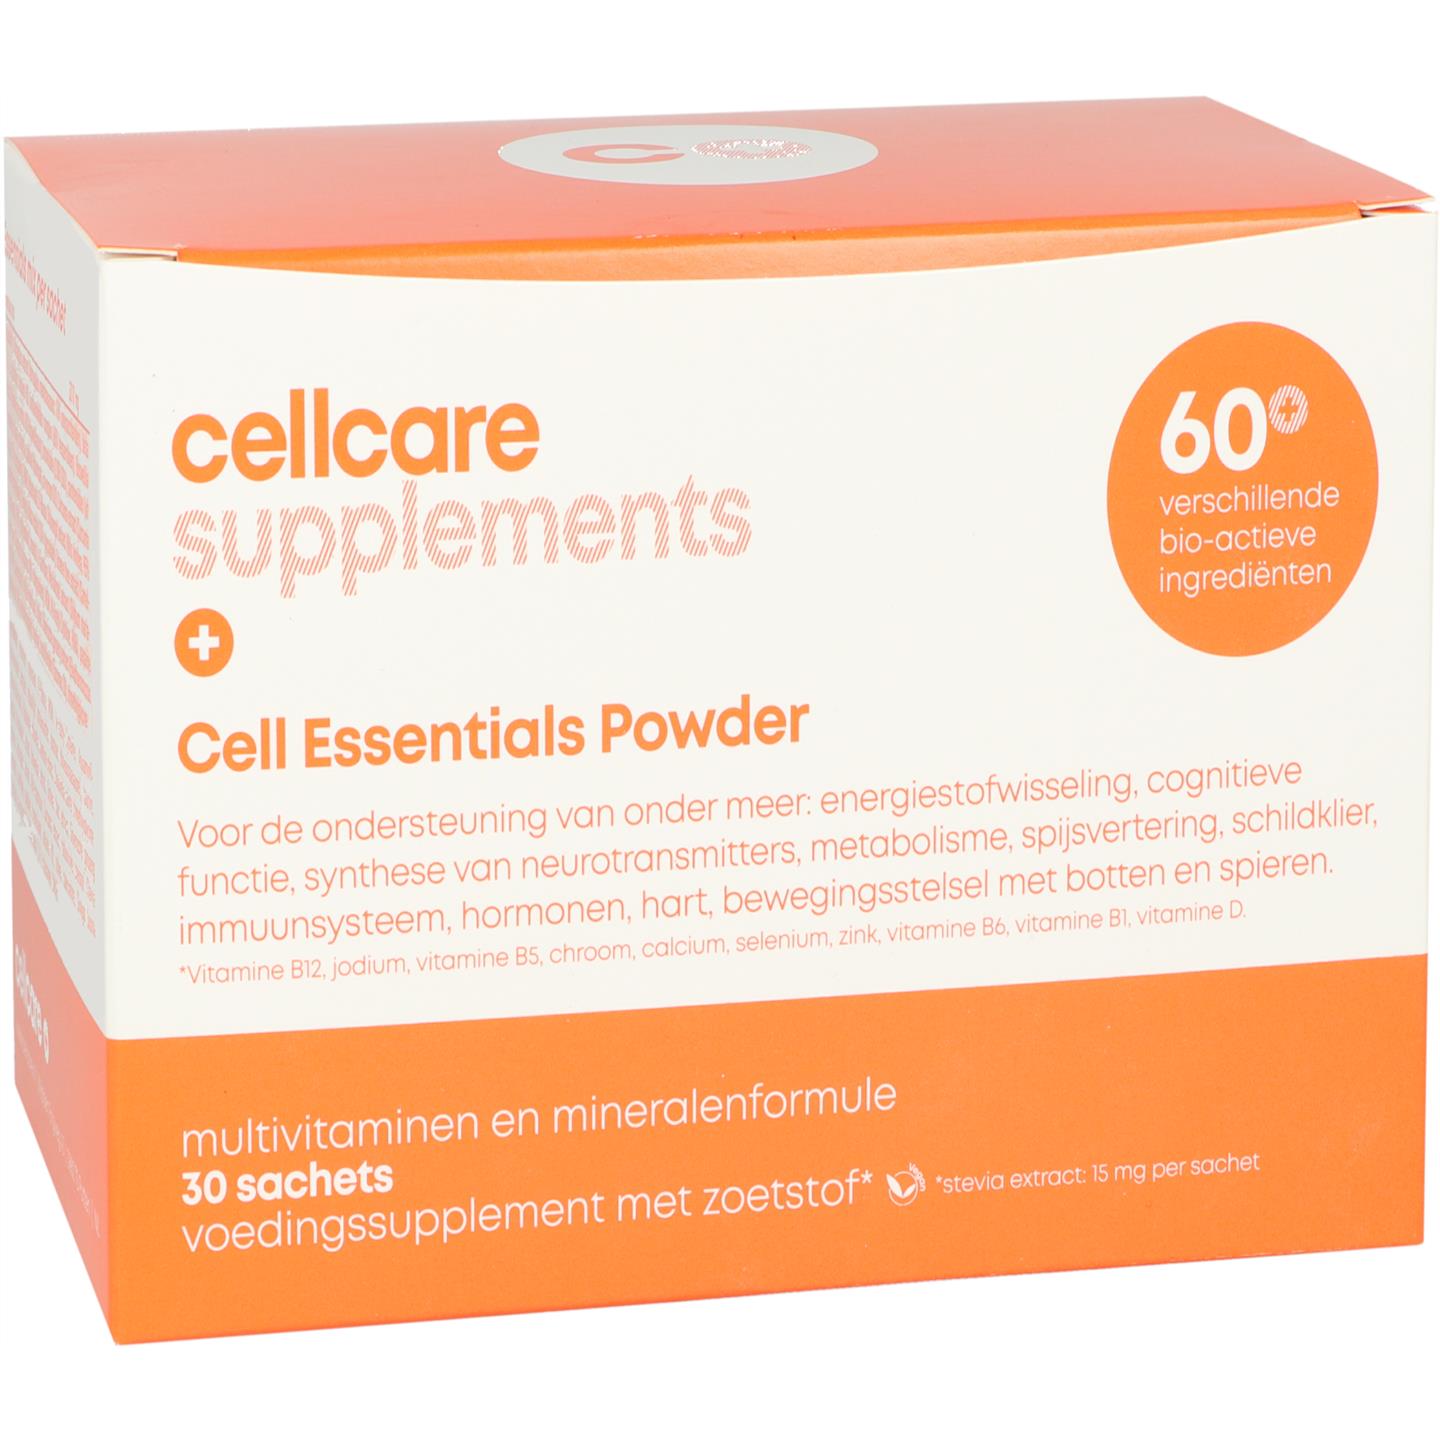 Cell Essentials Powder